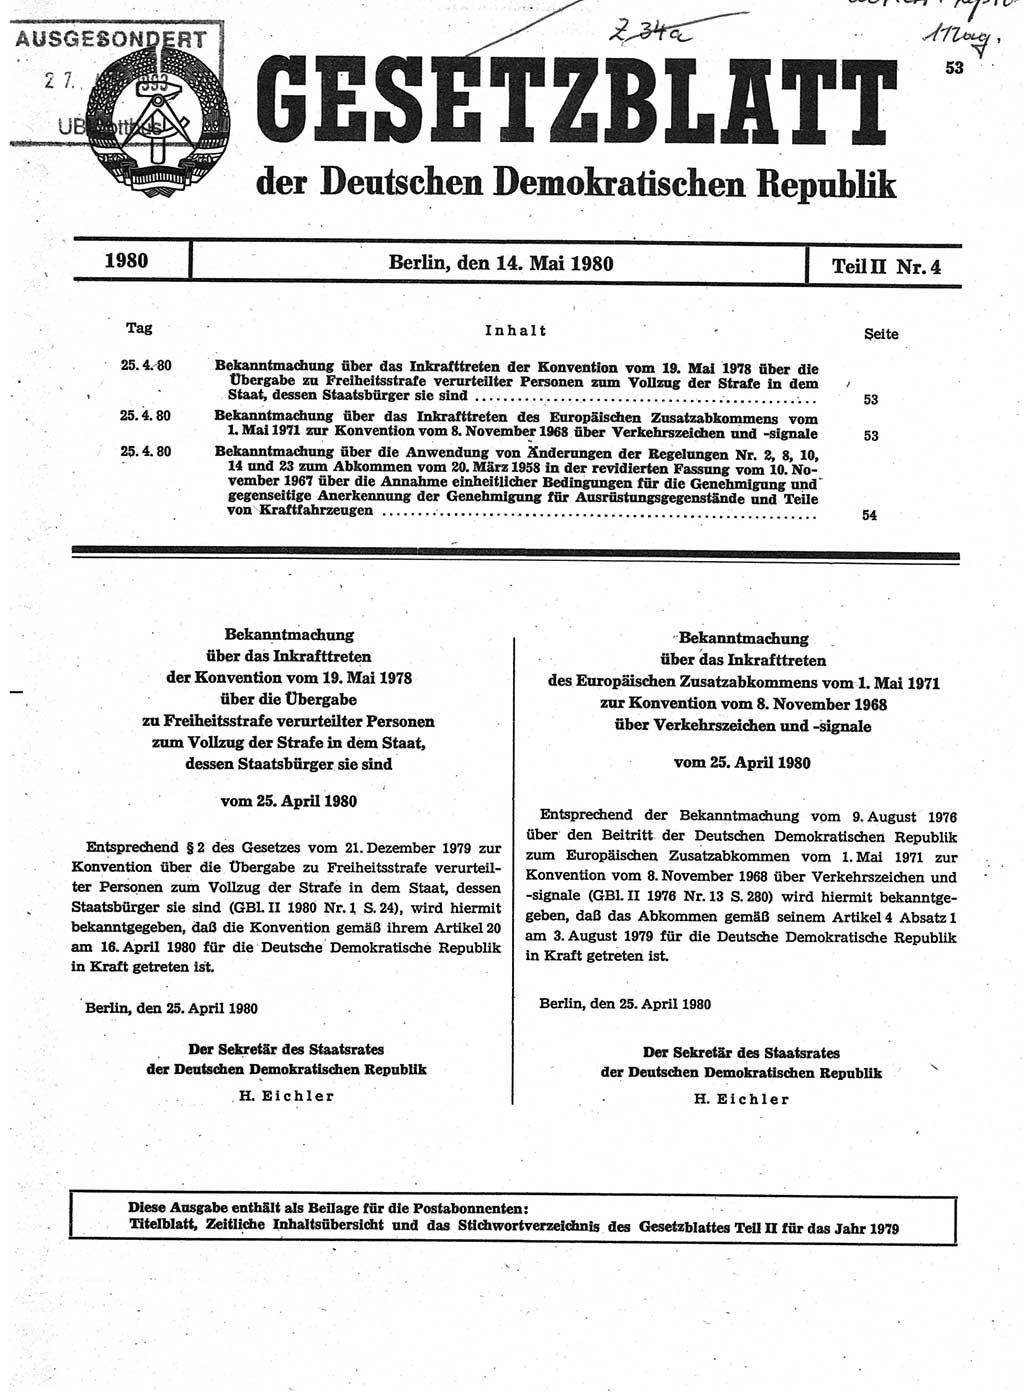 Gesetzblatt (GBl.) der Deutschen Demokratischen Republik (DDR) Teil ⅠⅠ 1980, Seite 53 (GBl. DDR ⅠⅠ 1980, S. 53)